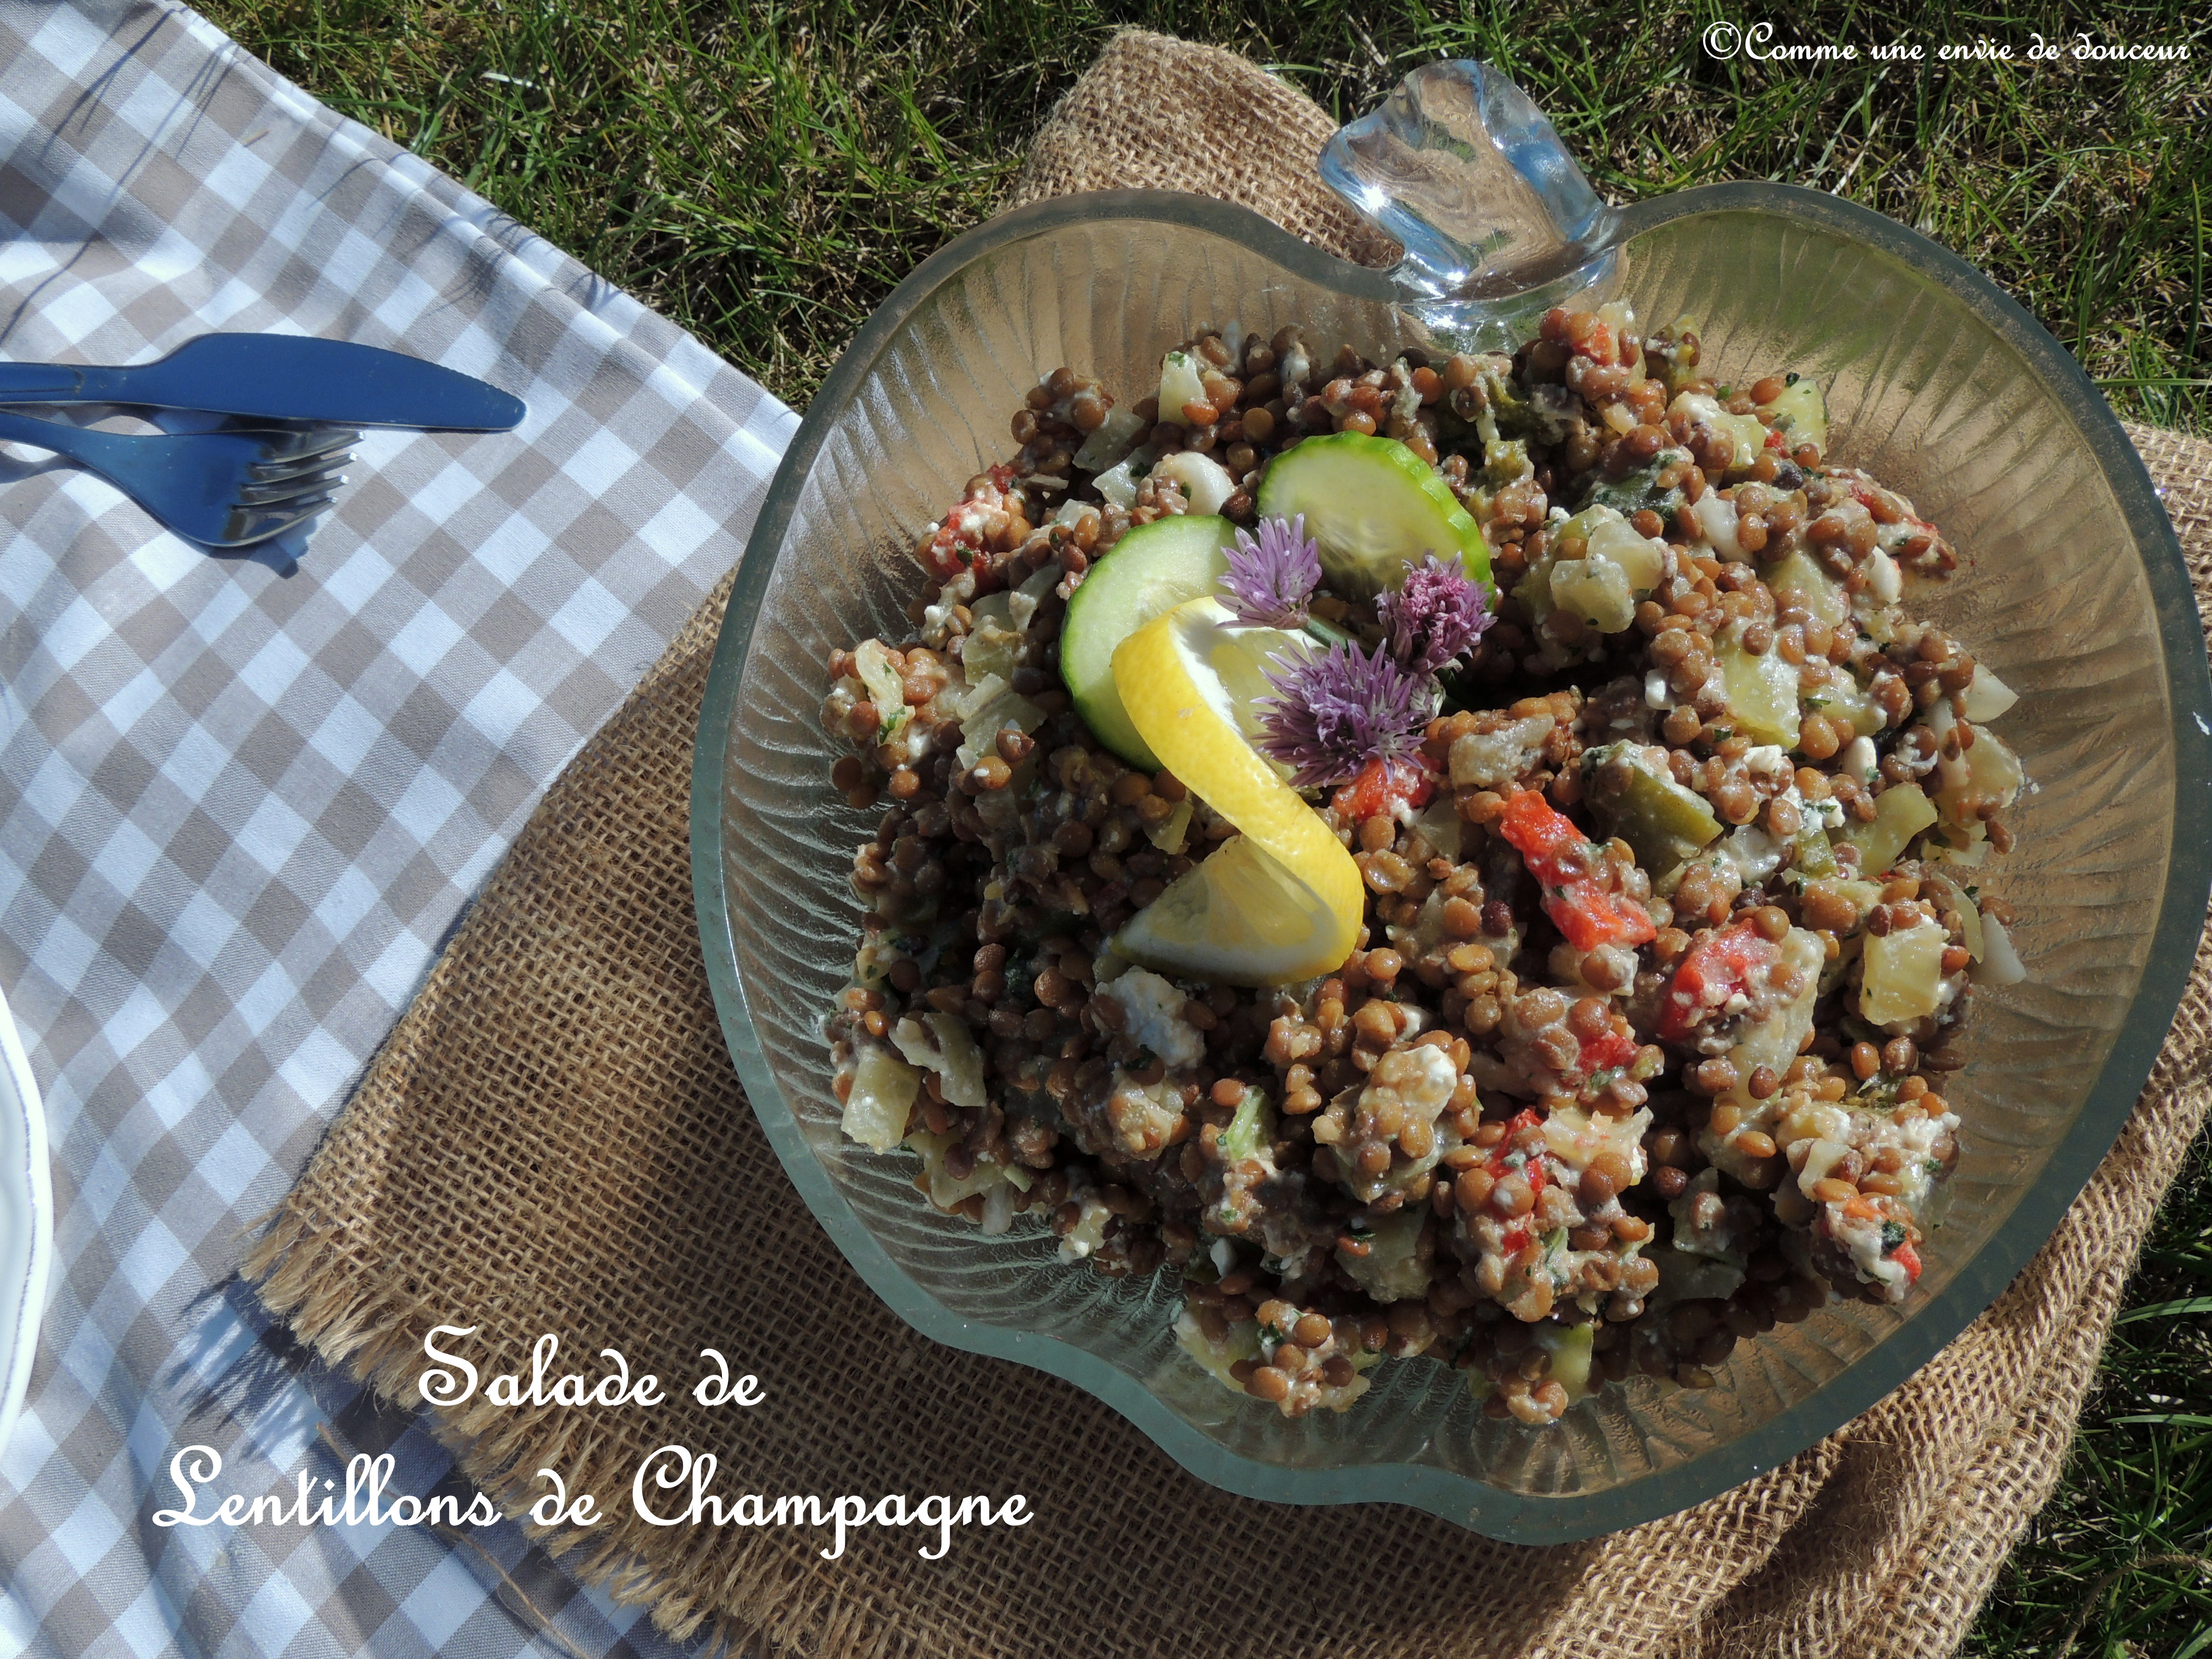 Salade de lentillons de champagne – Champagne’s lentils salad